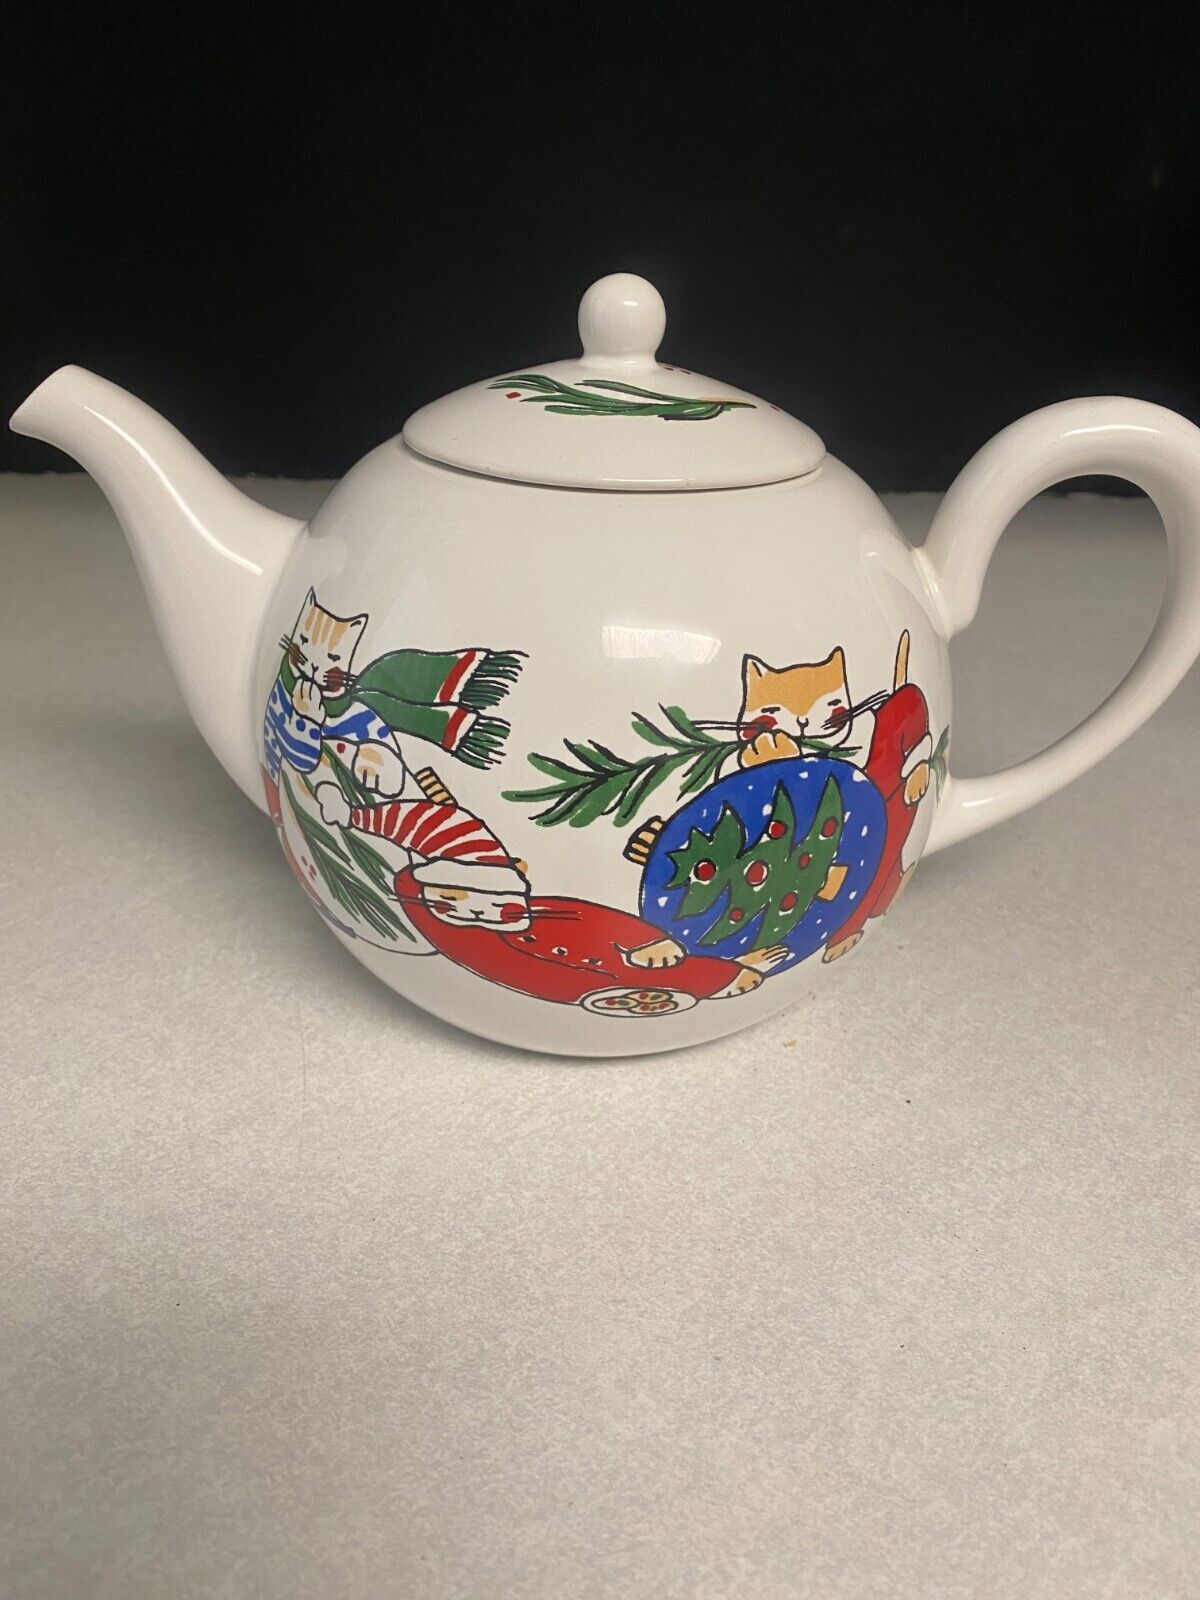 Feline Festivities Market by PORTA Ceramic Teapot